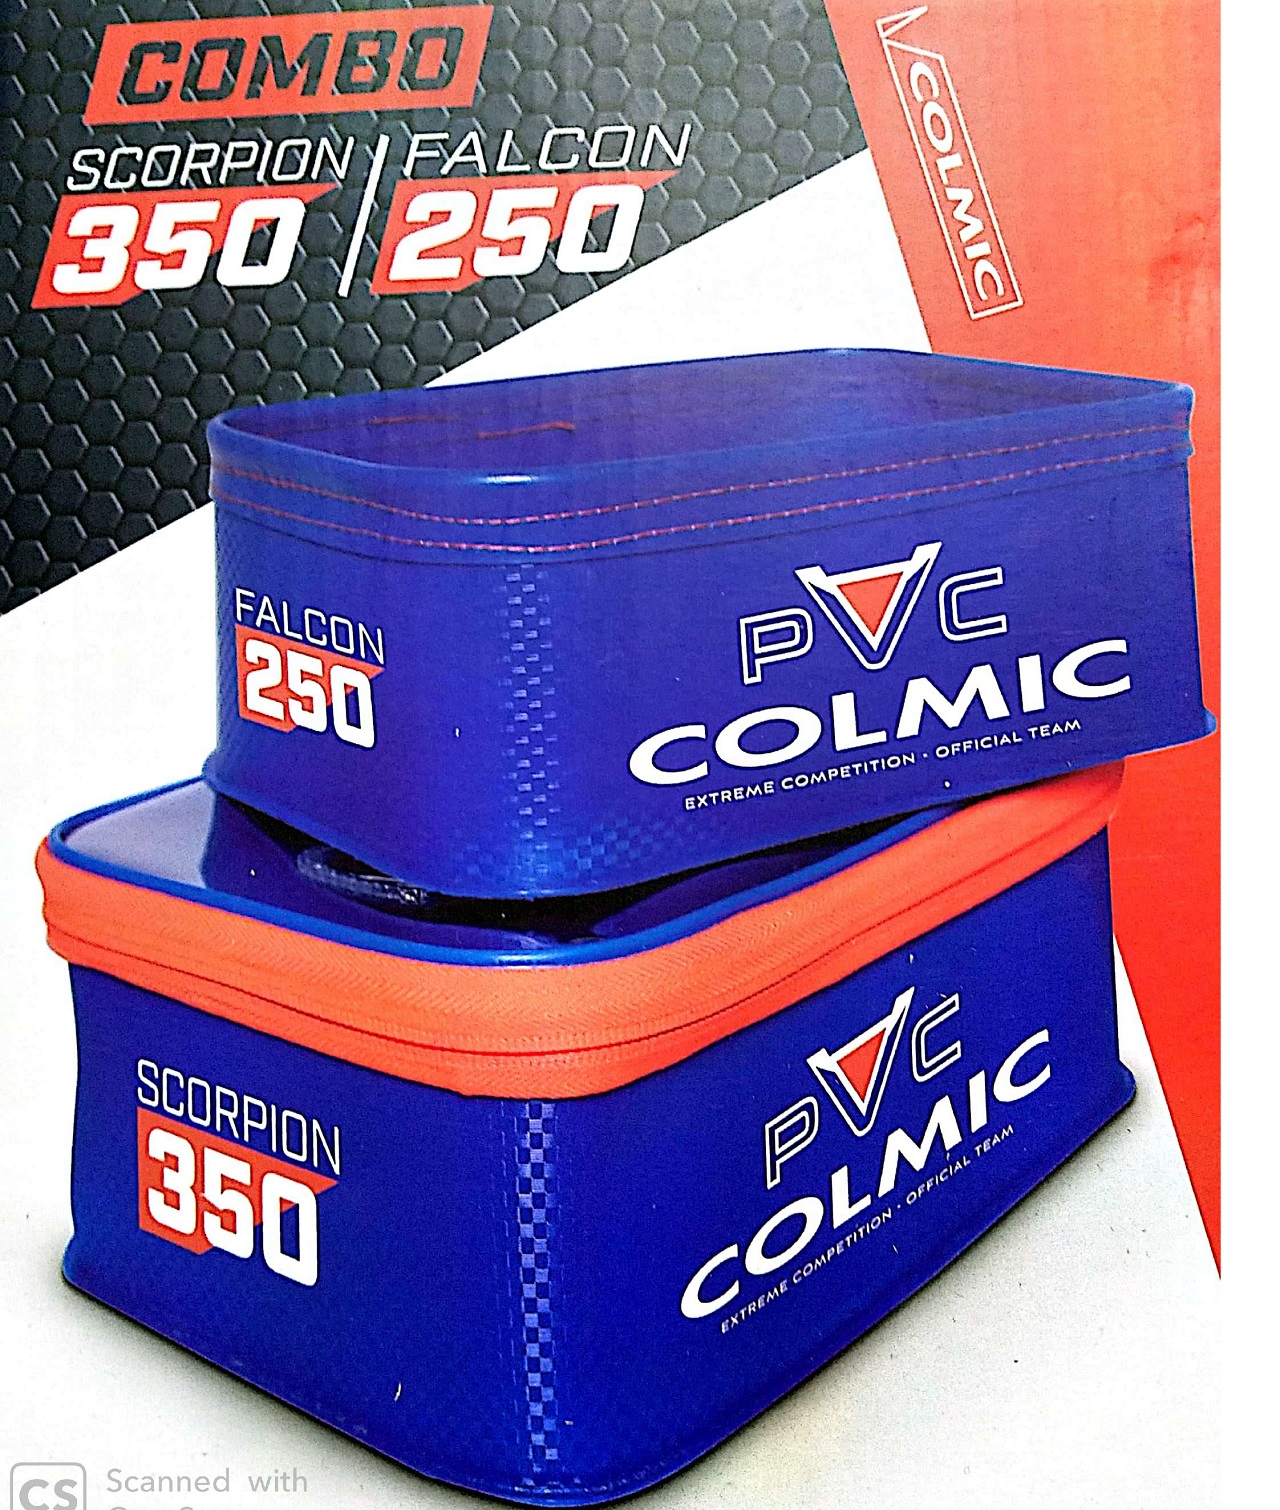 colmic PVC: COMBO SCORPION BOXEVA405_1.jpg